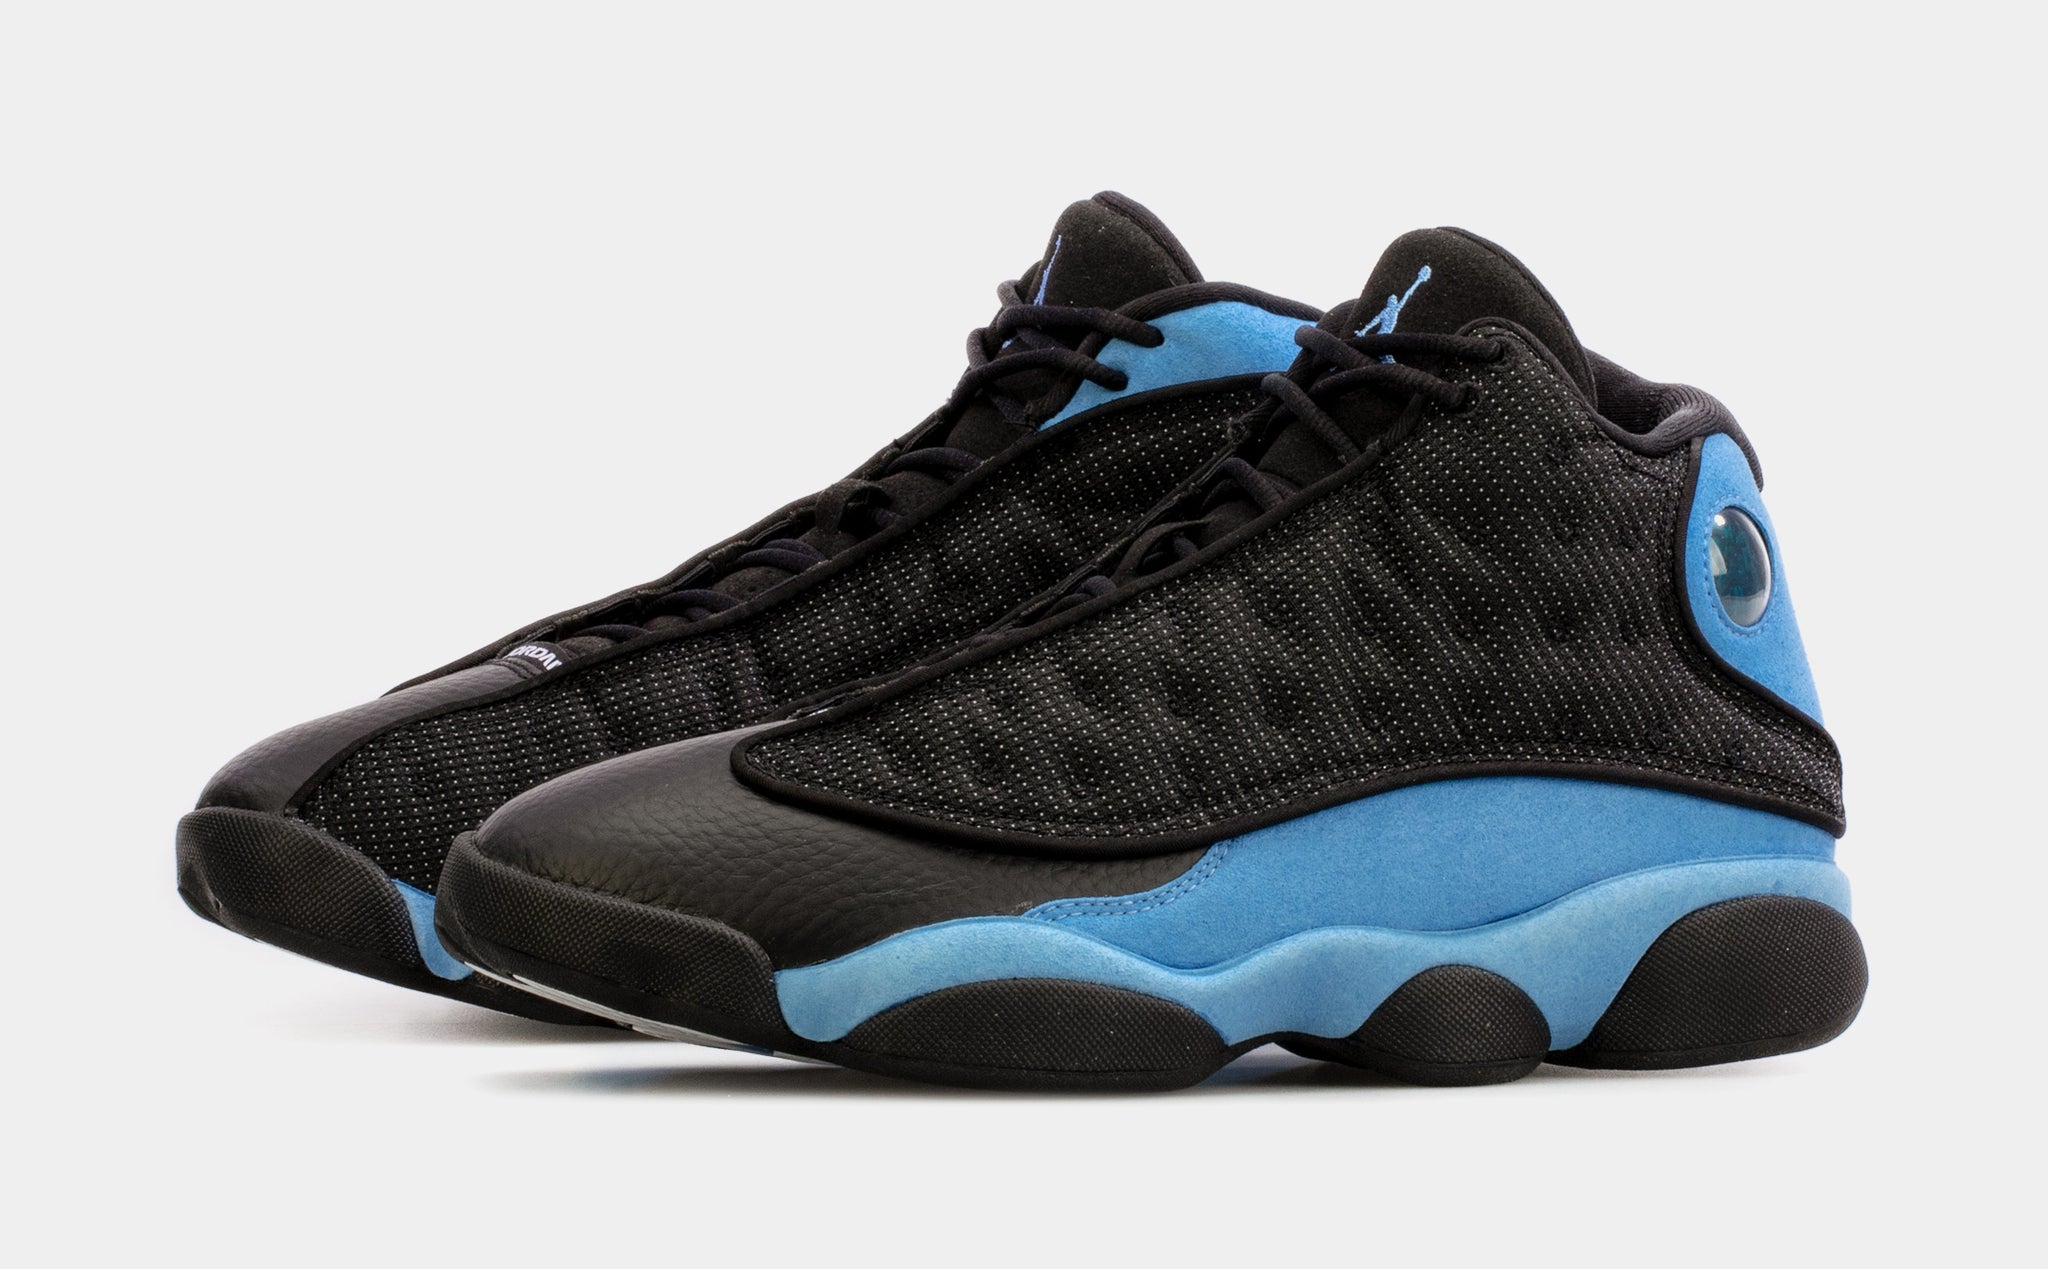 Jordan 13 Retro Mens Shoes 9.5 Black/University Blue/Black